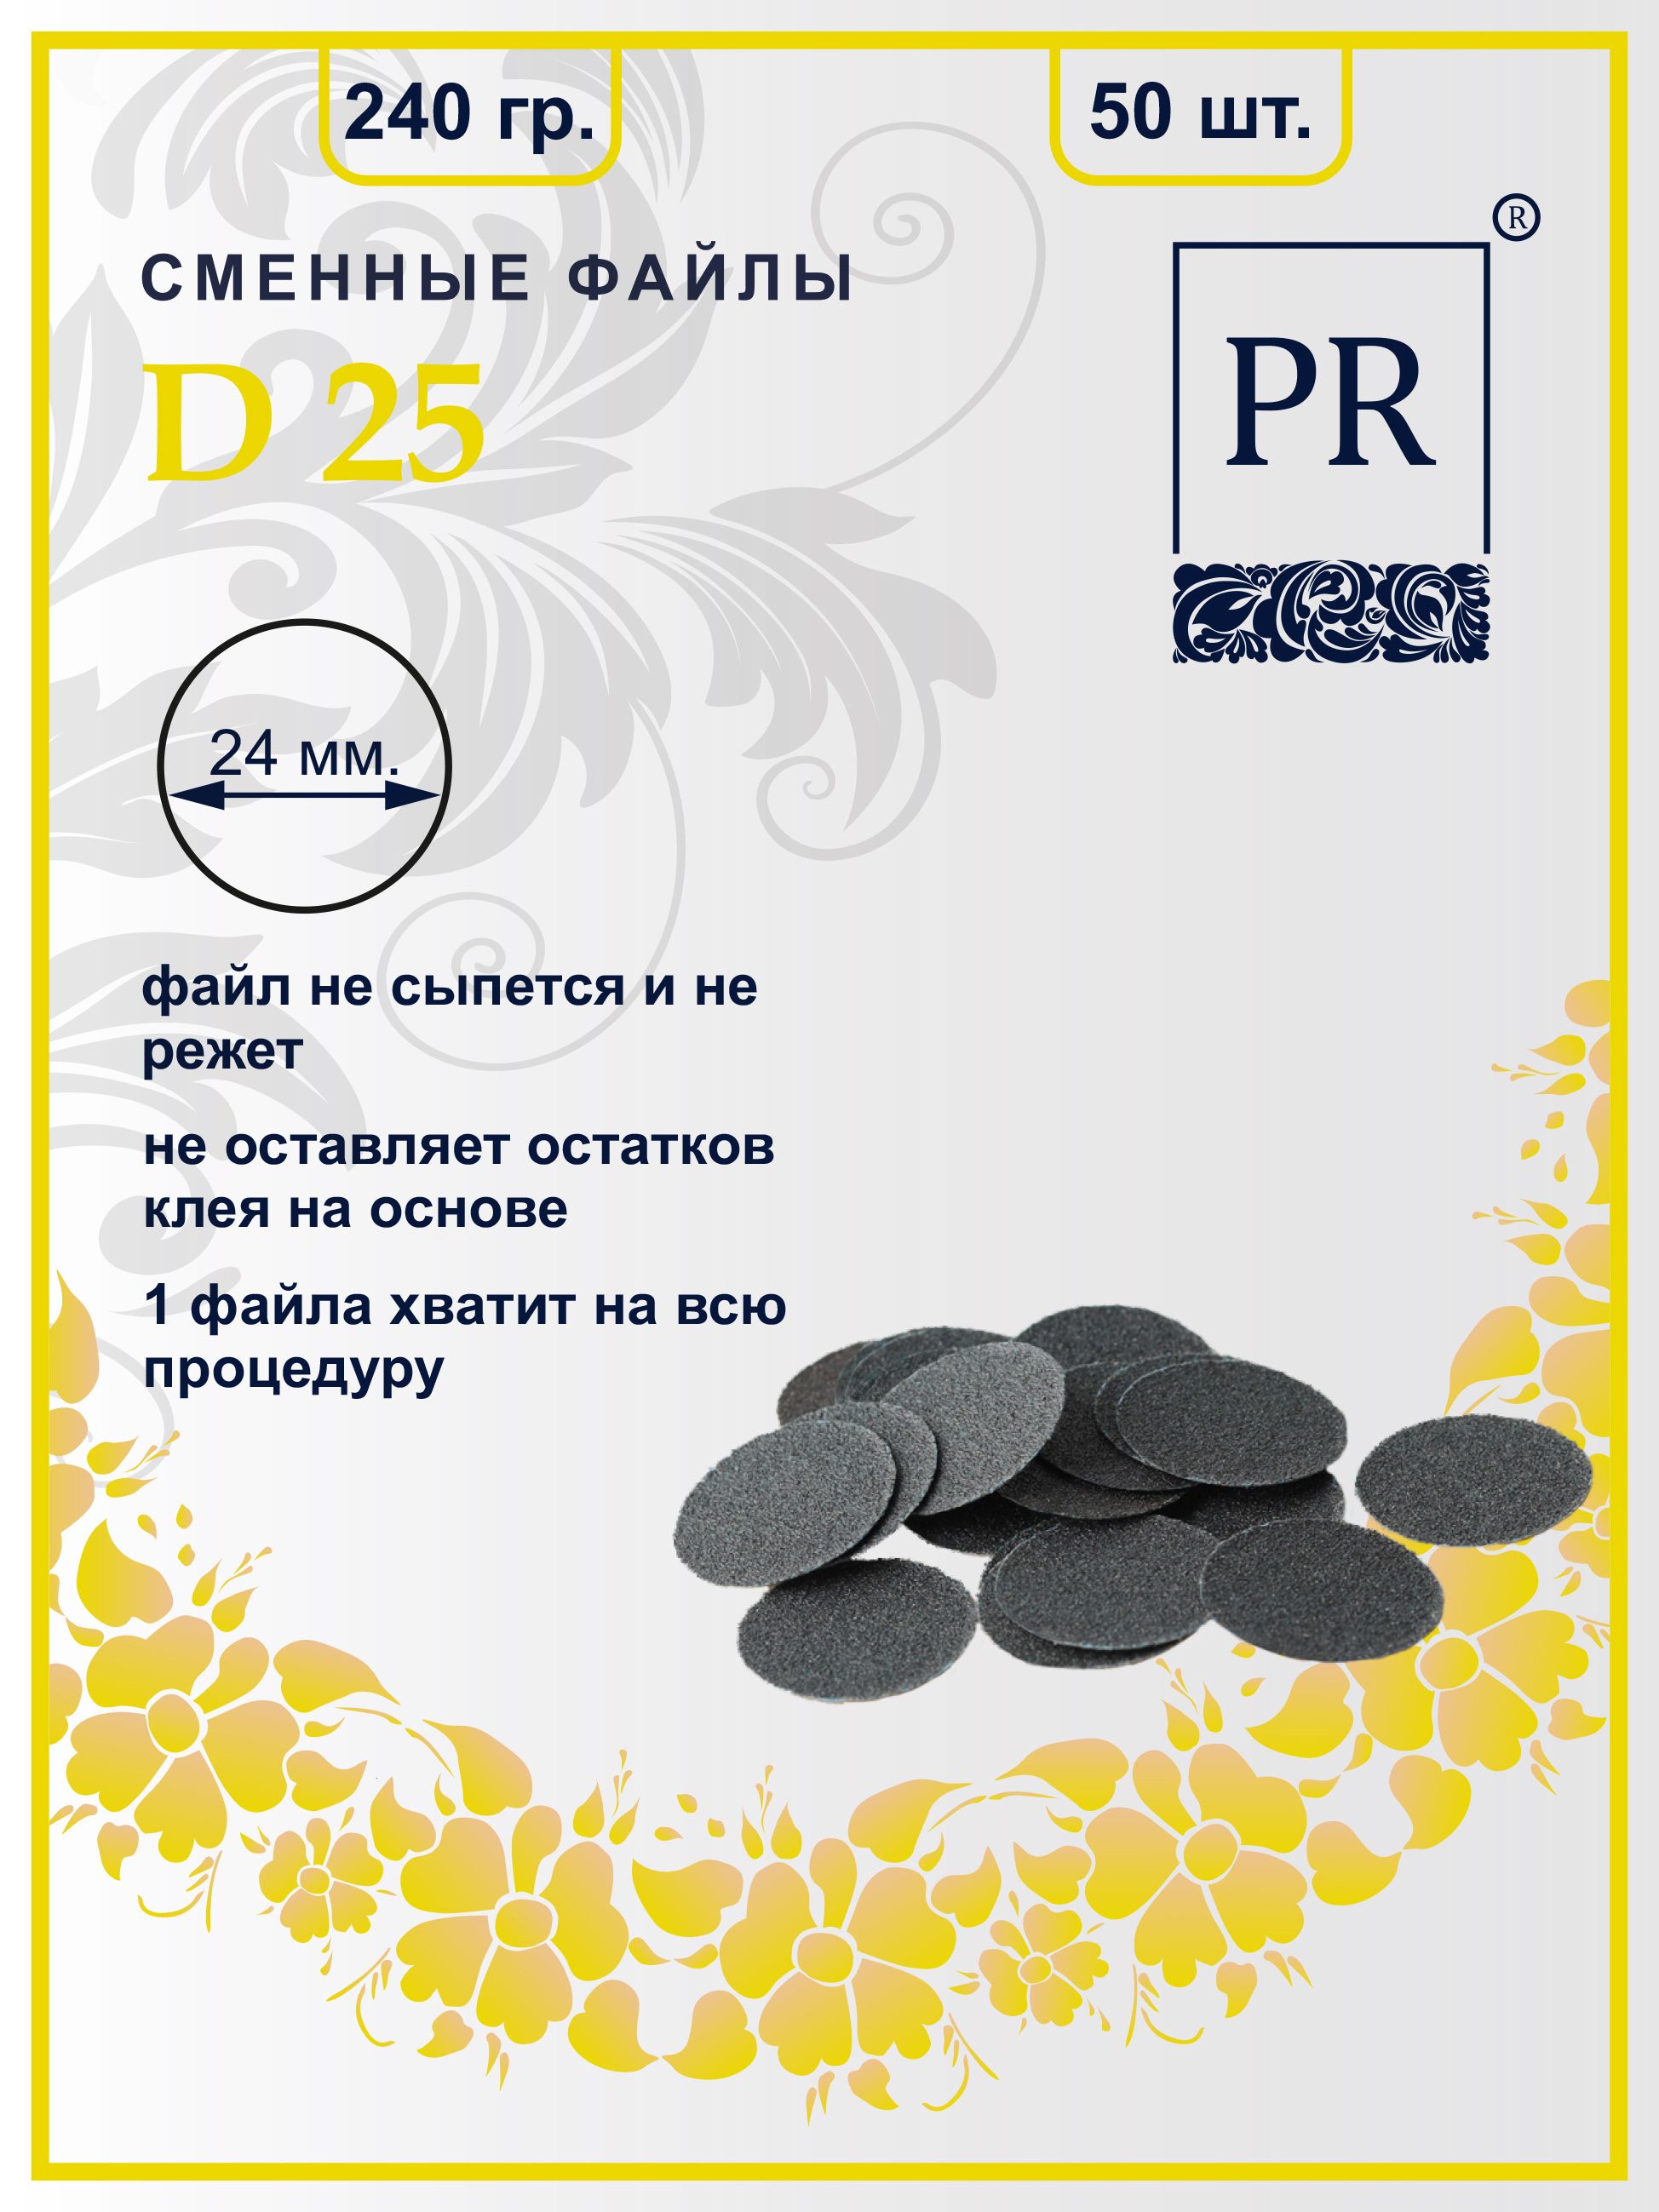 Сменные файлы Pilochki Russia диски для педикюра для диска L 240 грит 50 штук soul of russia rostov 100